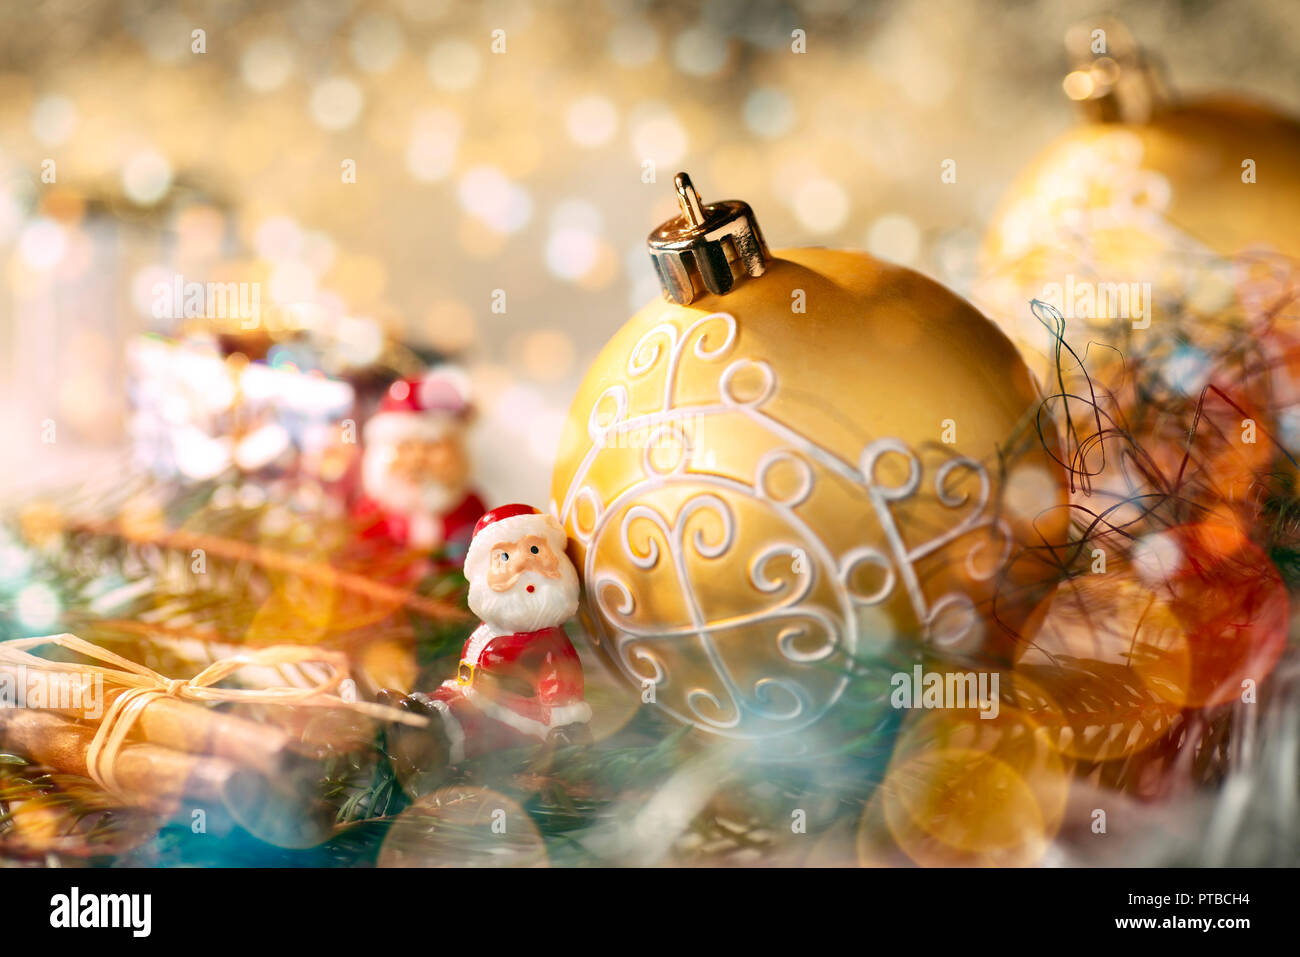 Adornos de oro con decoración de Navidad y pequeña figura como Santa Claus Foto de stock